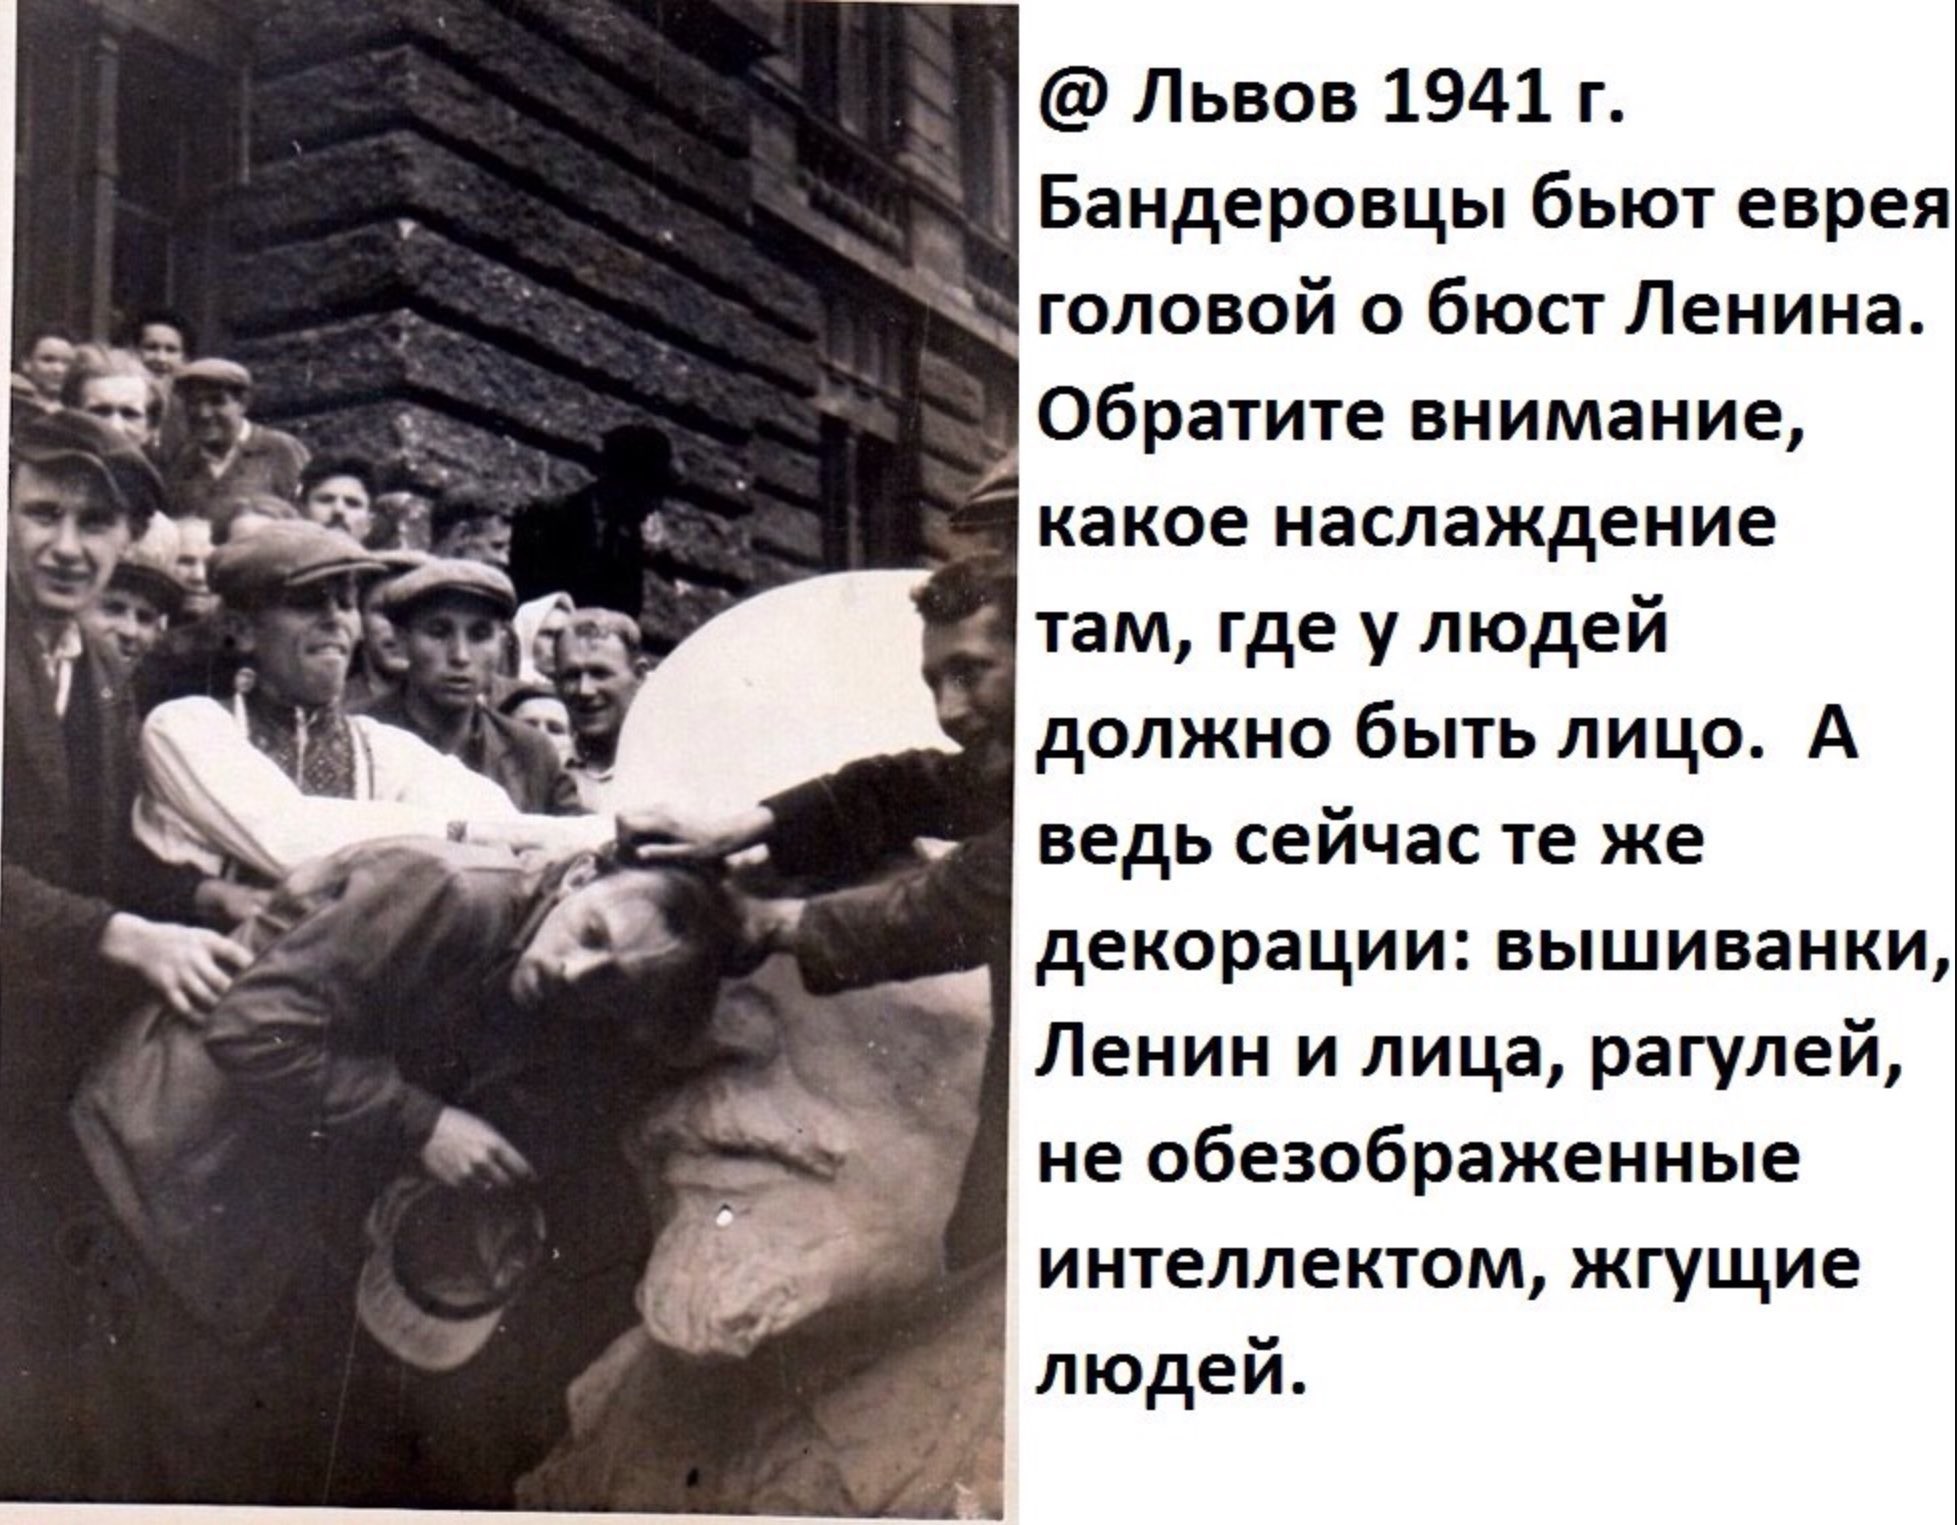 Бандеровцы в 1941 зверства